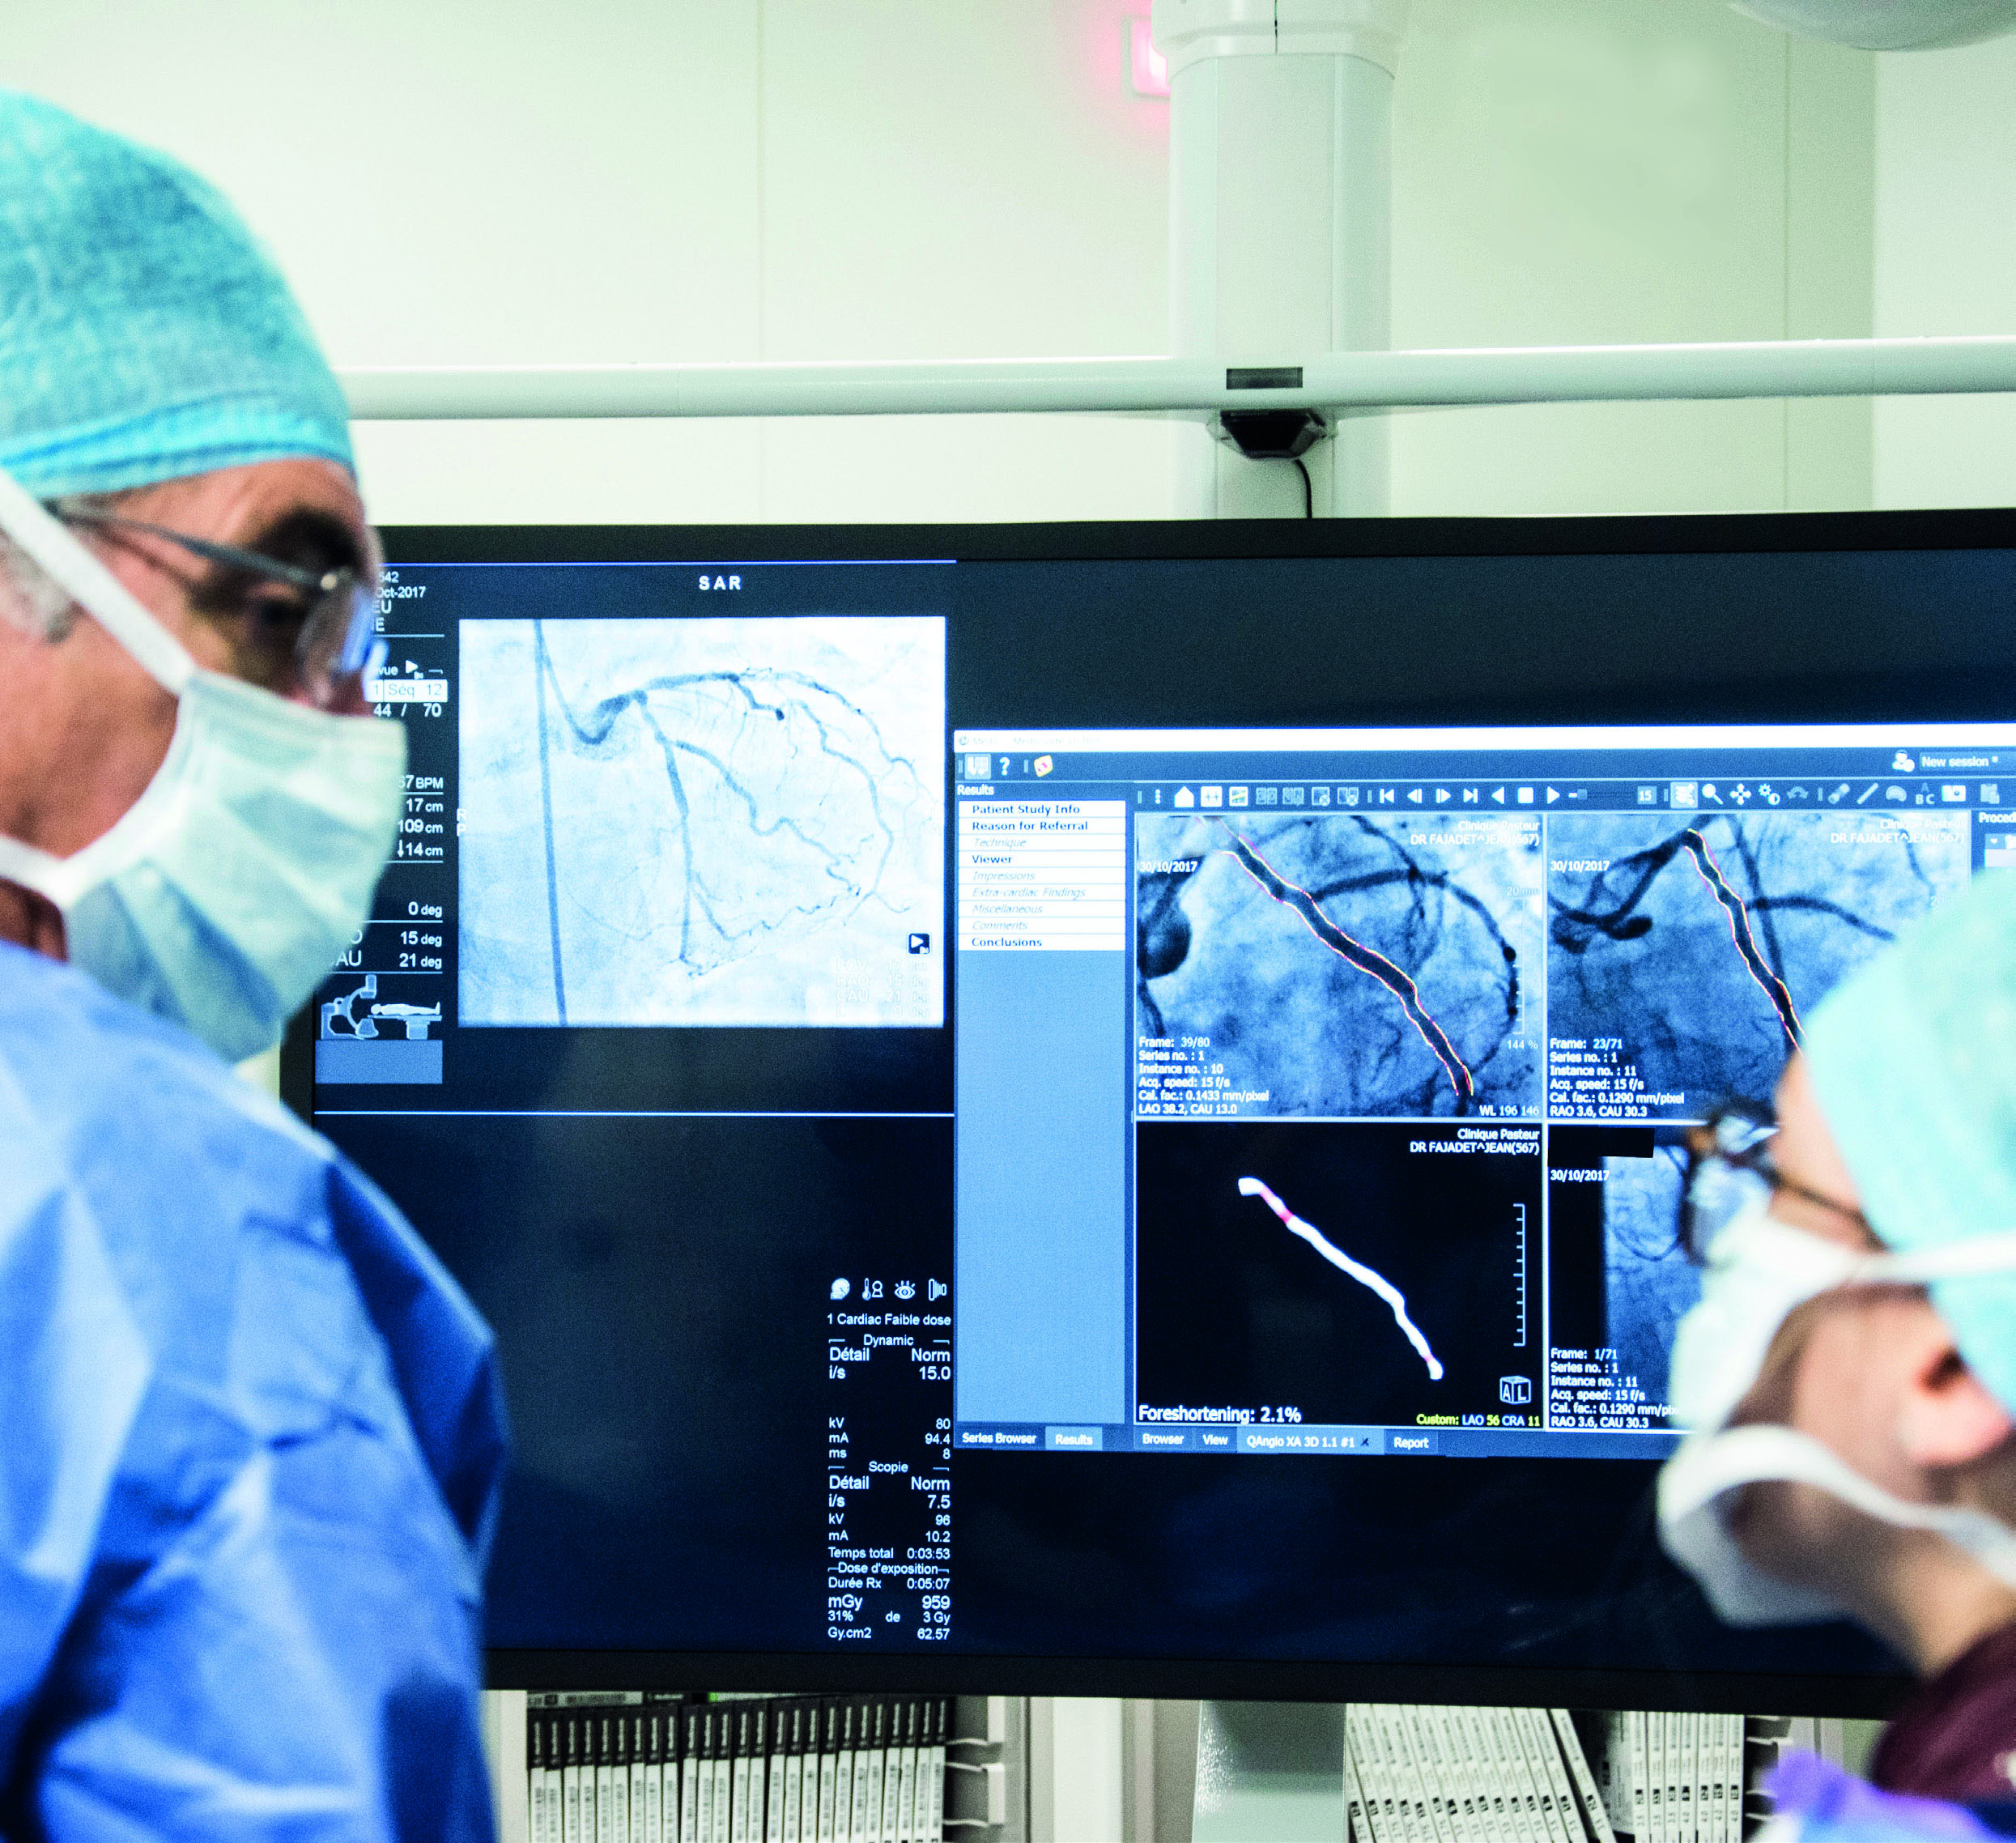 Collaborazione tra GE HealthCare e Medis Medical Imaging per innovare la diagnosi e il trattamento delle malattie coronariche